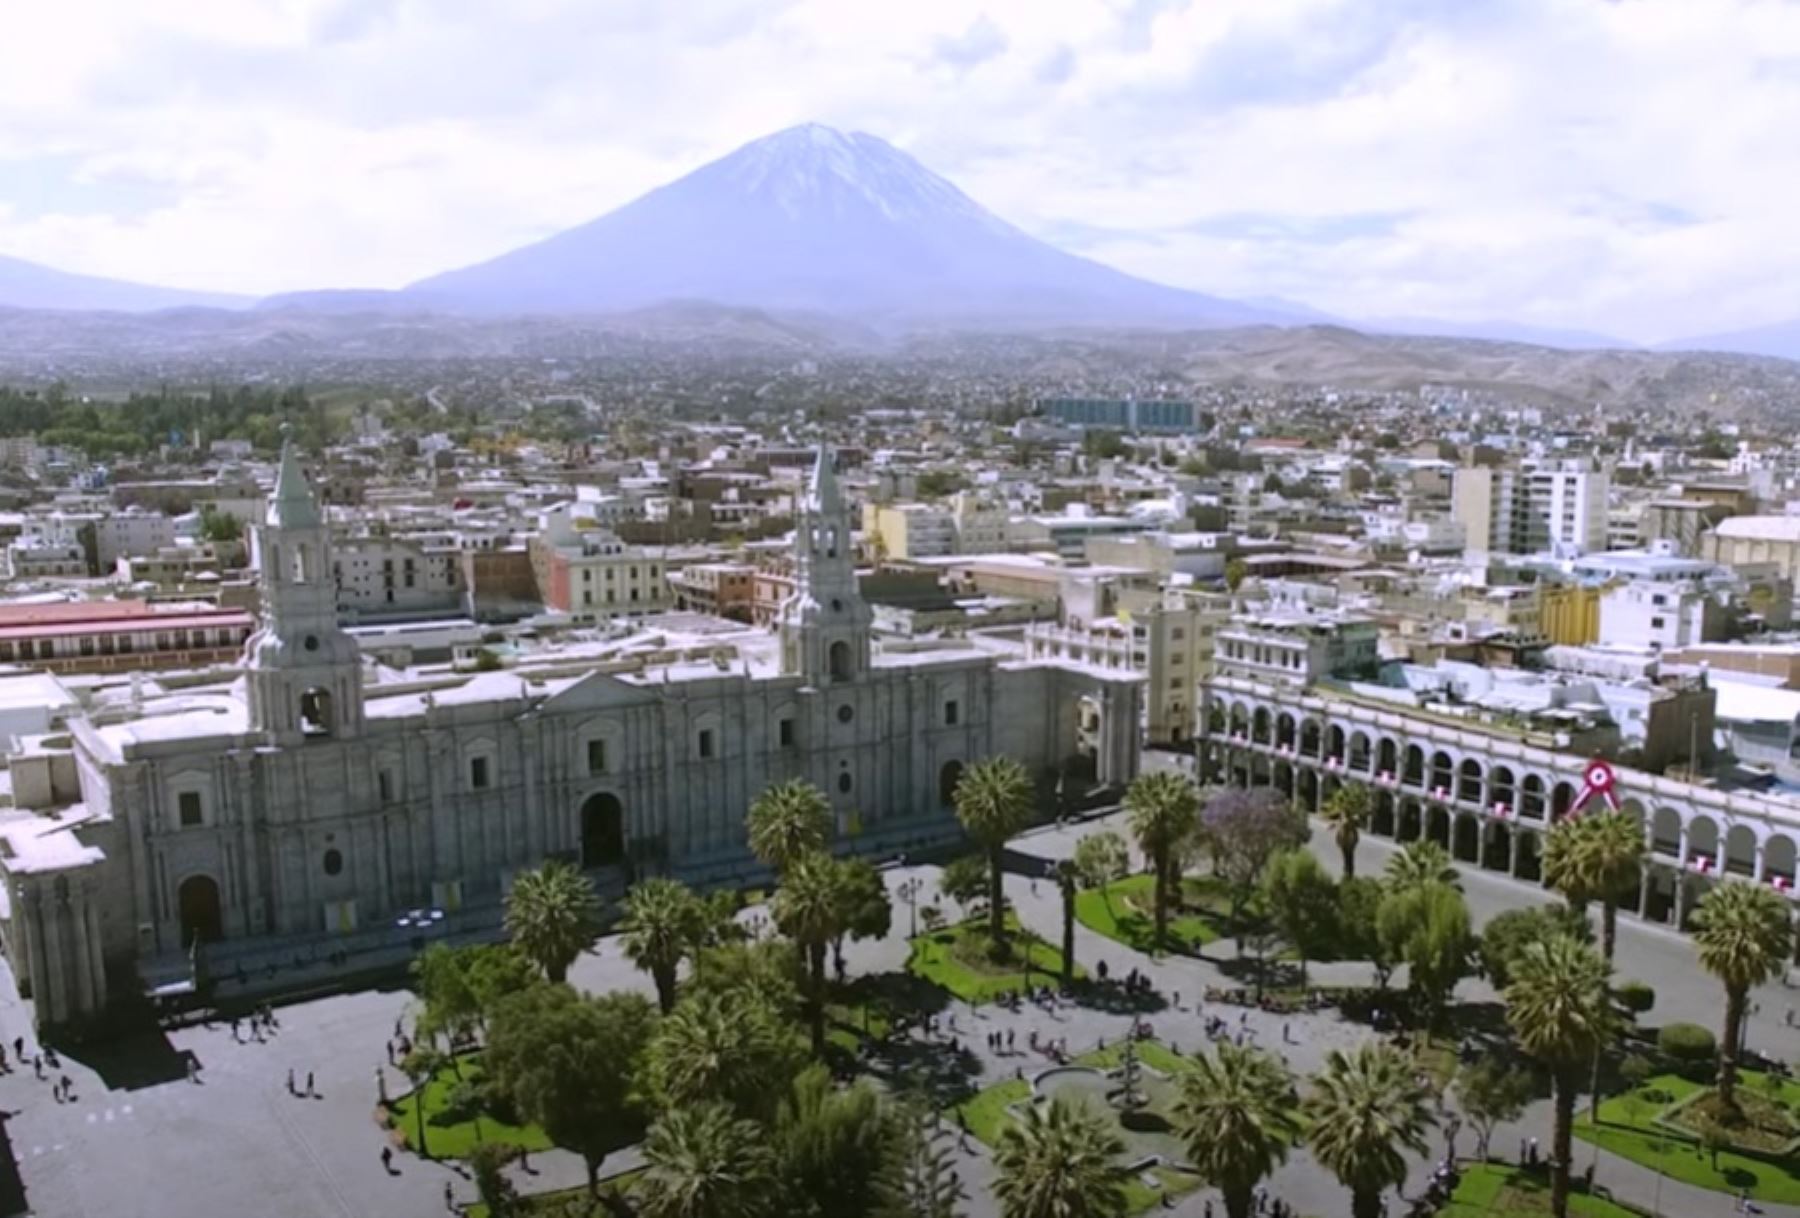 Nuevas construcciones ponen en riesgo el título de Patrimonio Cultural de la Humanidad que ostenta el Centro Histórico de Arequipa, advierte el Colegio de Arquitectos. INTERNET/Medios